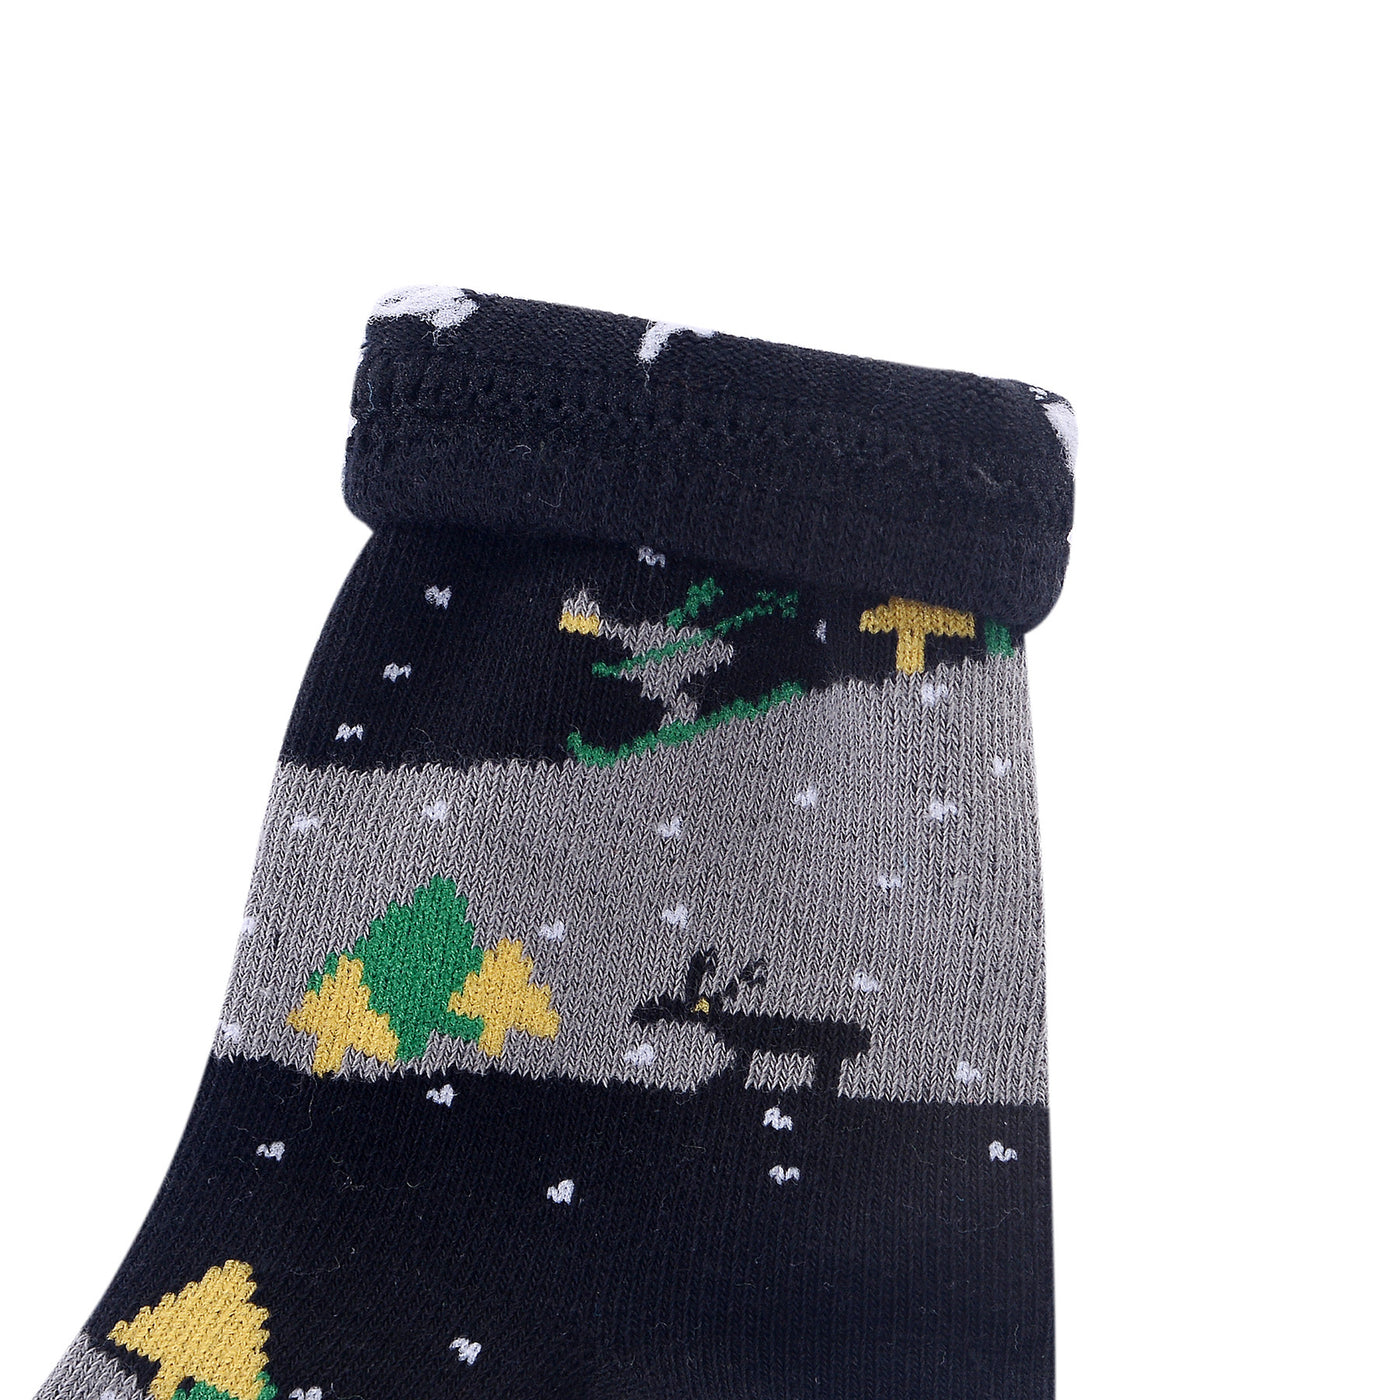 6 pares de calcetines de algodón peinado para niño - Árbol de Navidad - Talla UK Junior 9-11.5/Europa 27-30